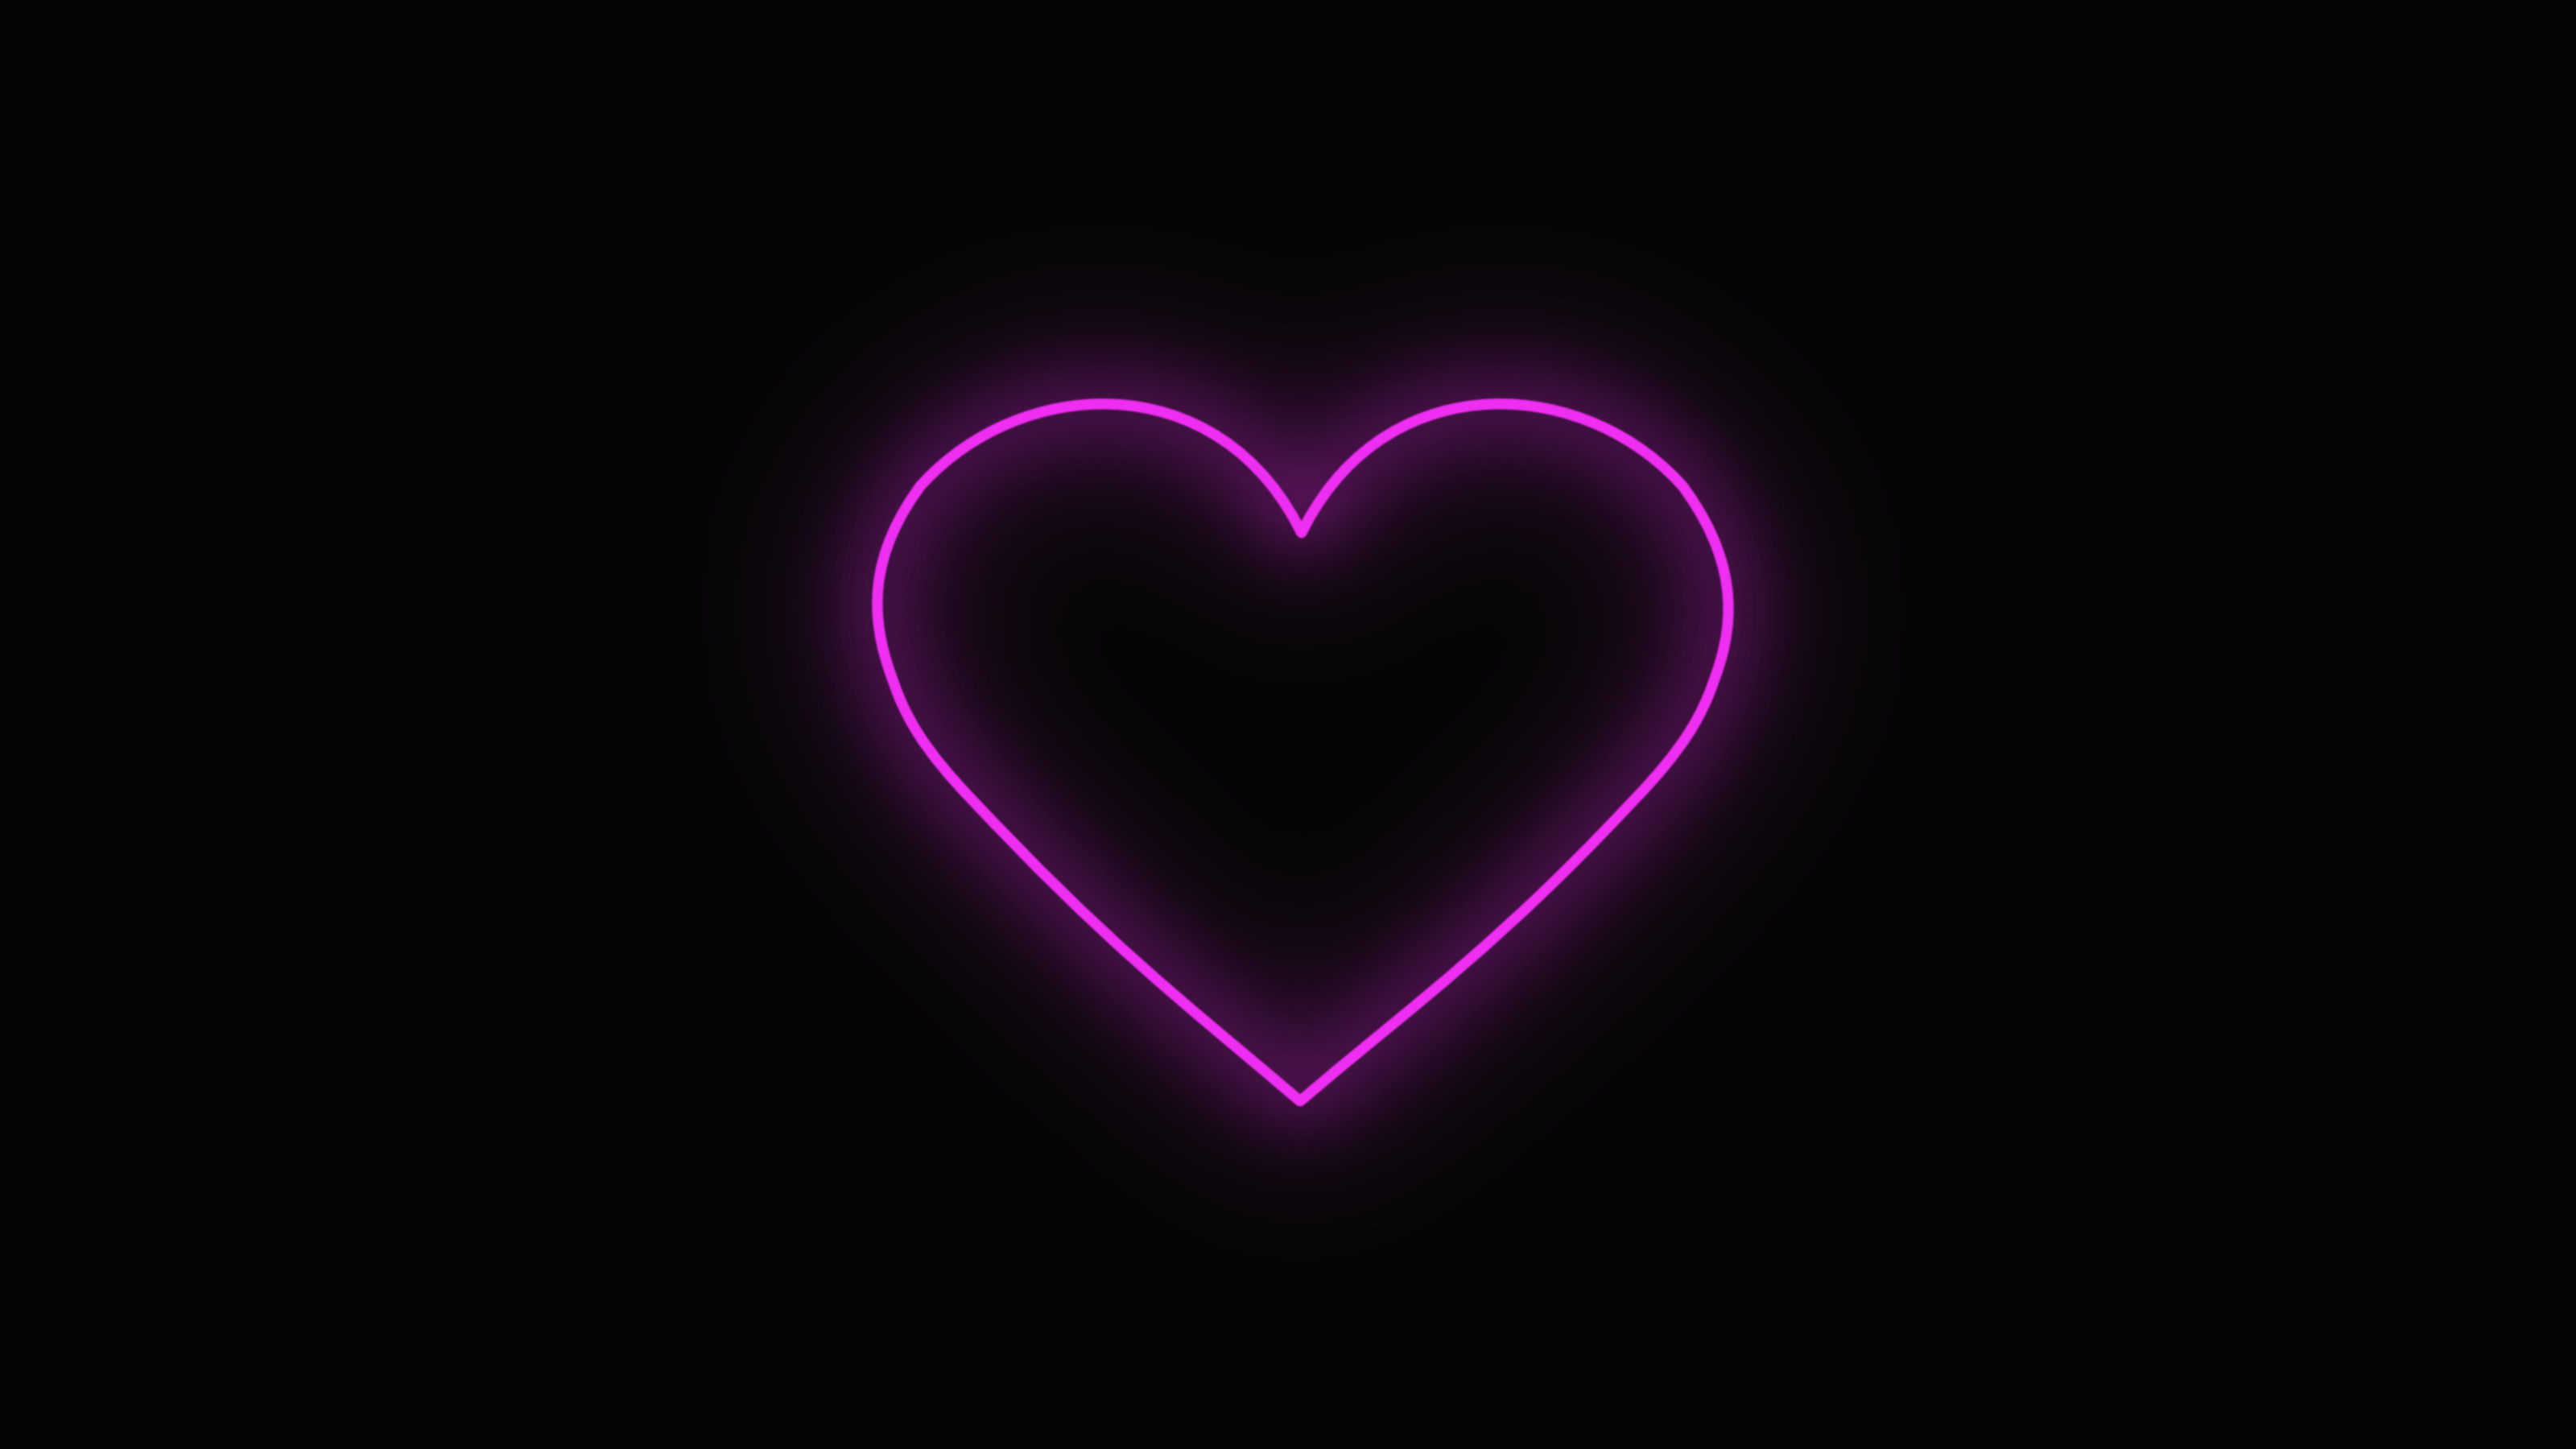 3200x1800 Wallpaper Hd Of Neon Heart Desktop Hearts